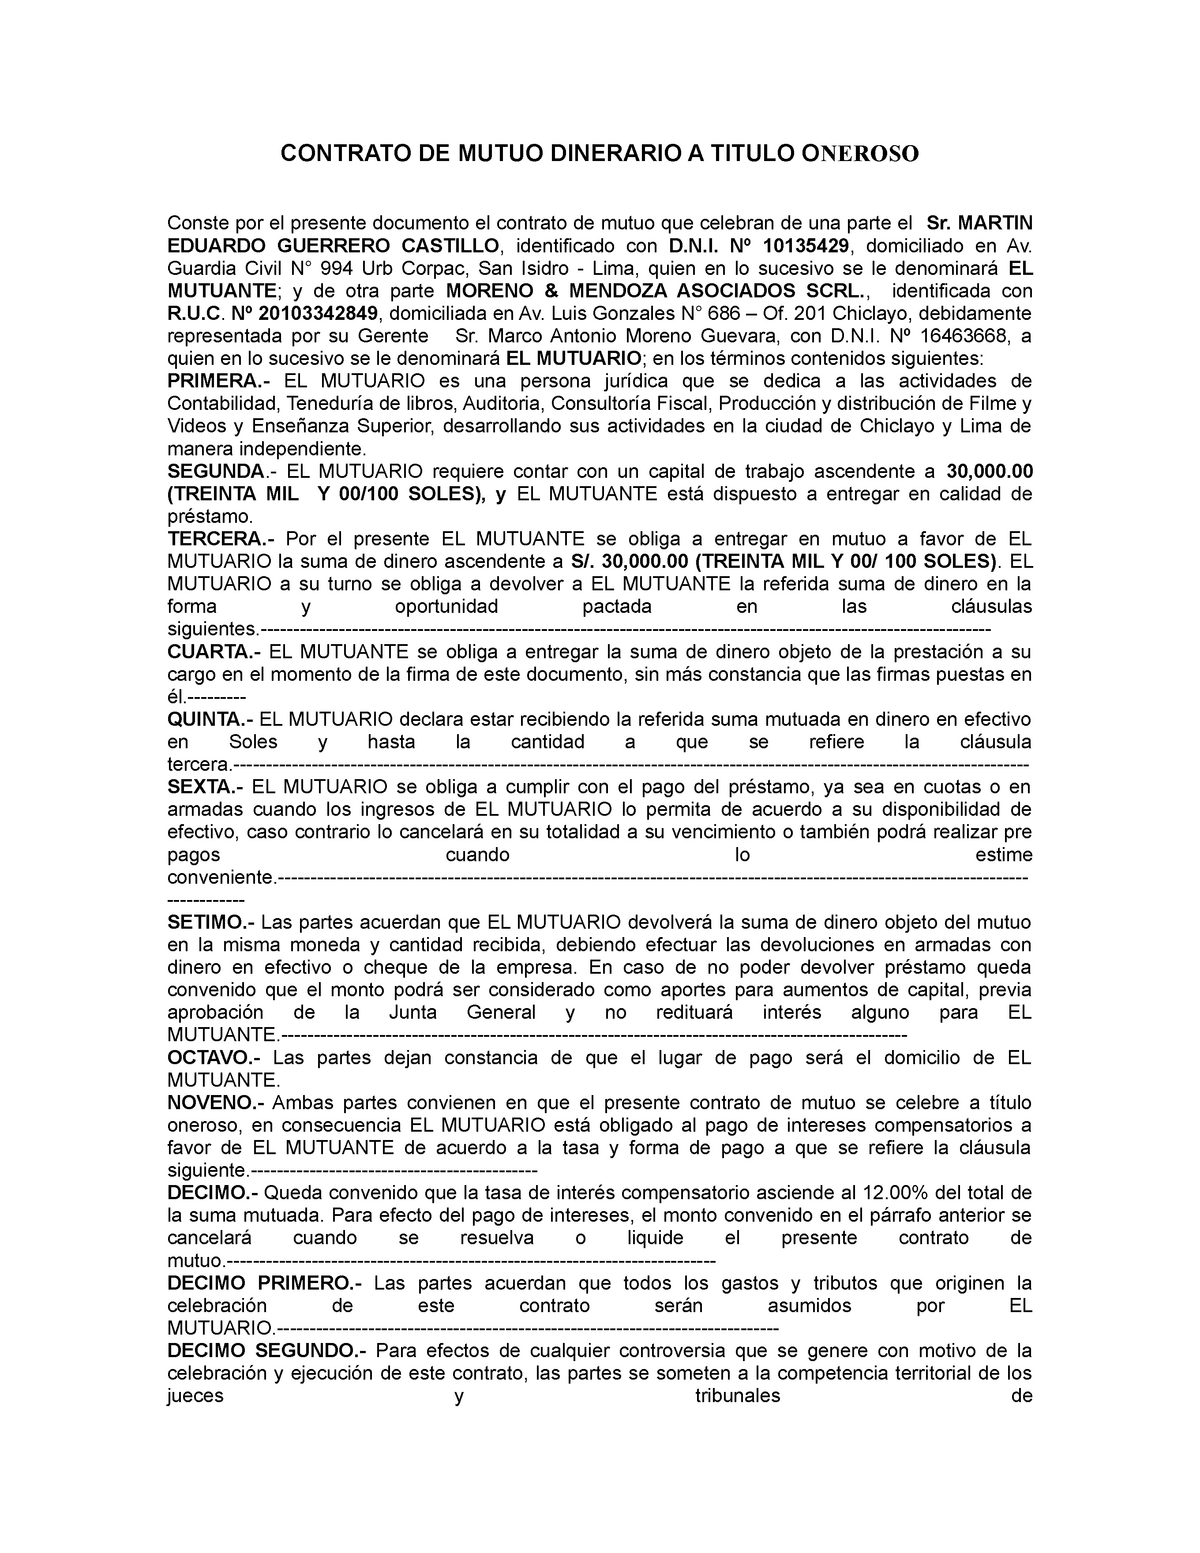 Contrato DE Mutuo Dinerario A Titulo Oneroso - CONTRATO DE MUTUO DINERARIO  A TITULO ONEROSO Conste - Studocu